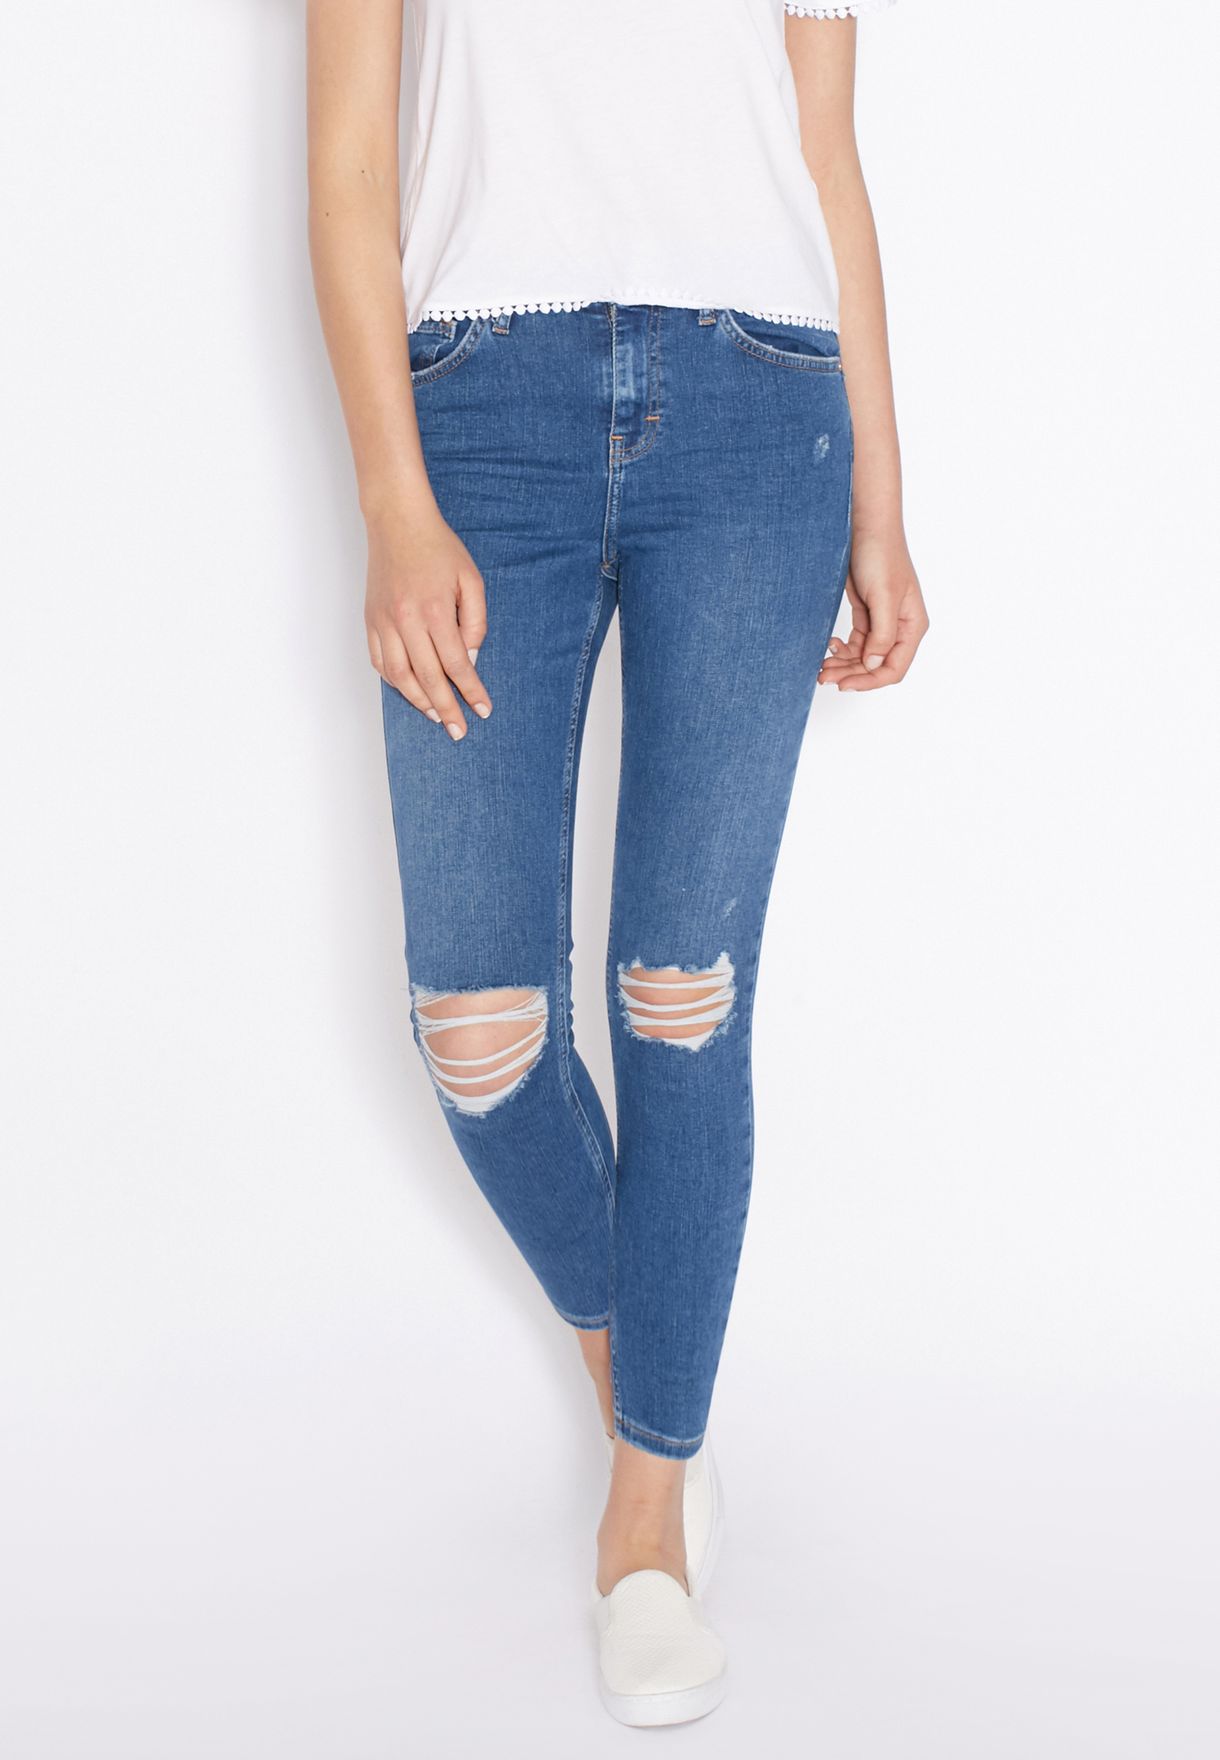 topshop jamie jeans high waist ankle grazer